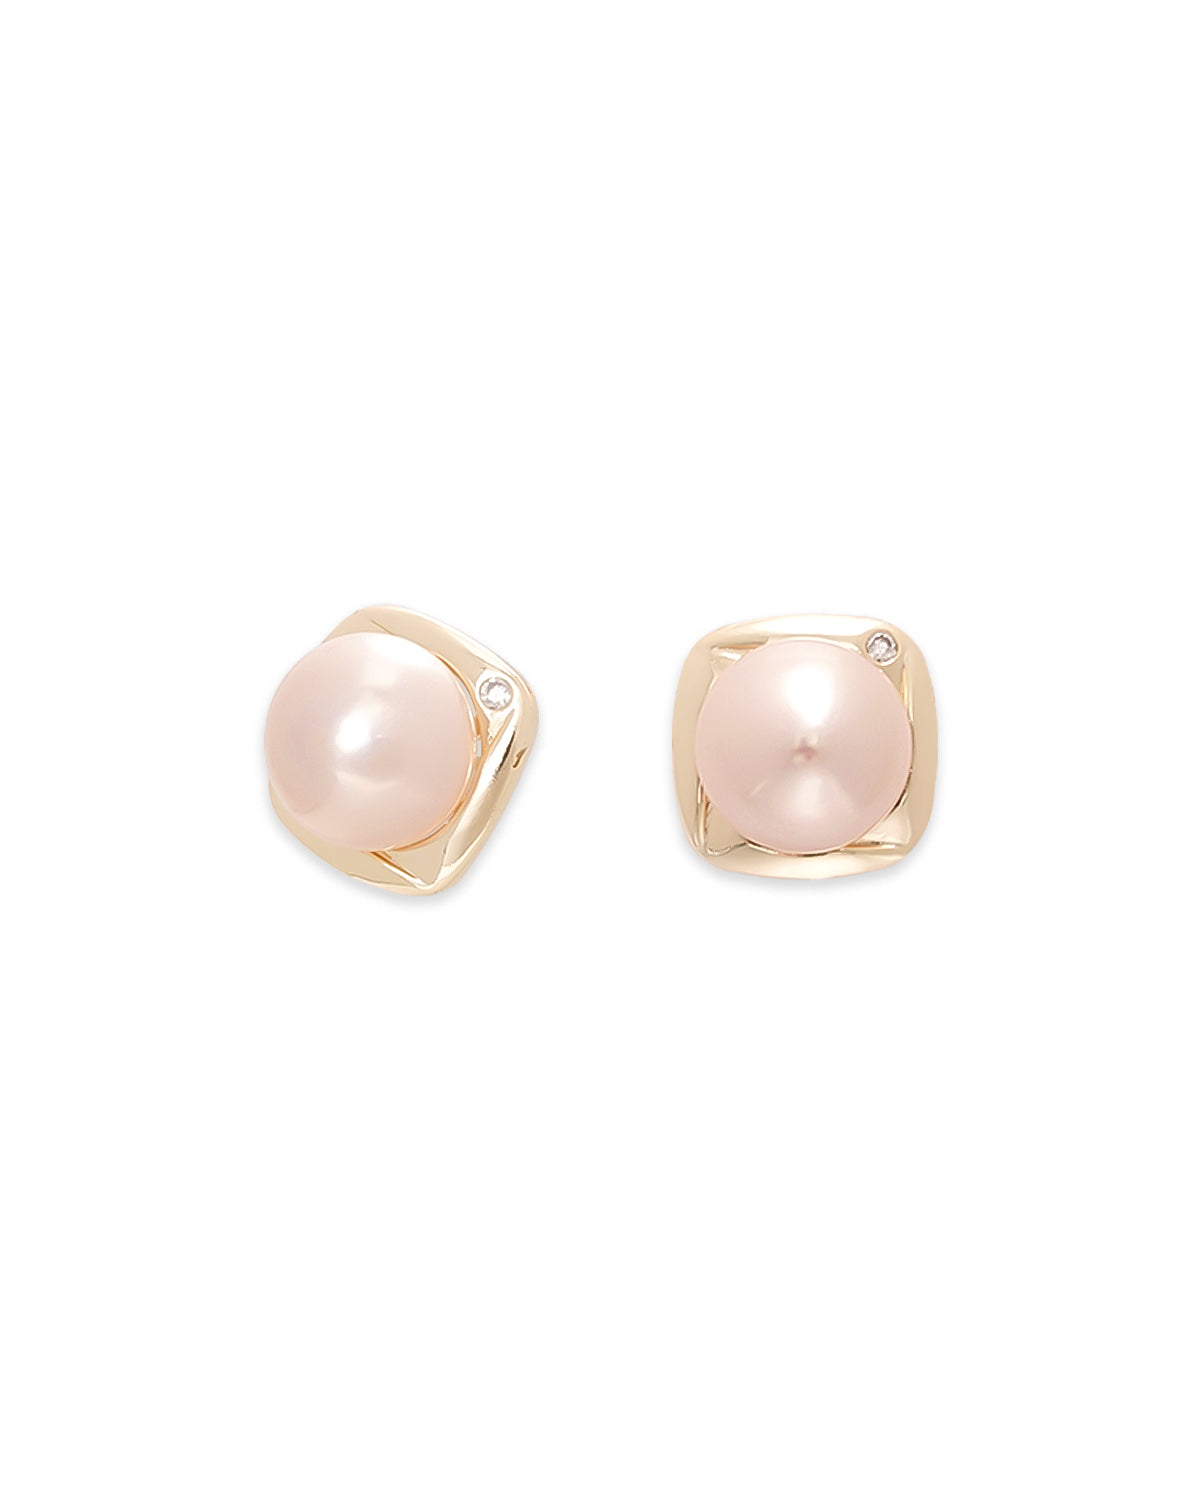 11mm Pink Freshwater Pearl Elegant Pale Stud Earrings